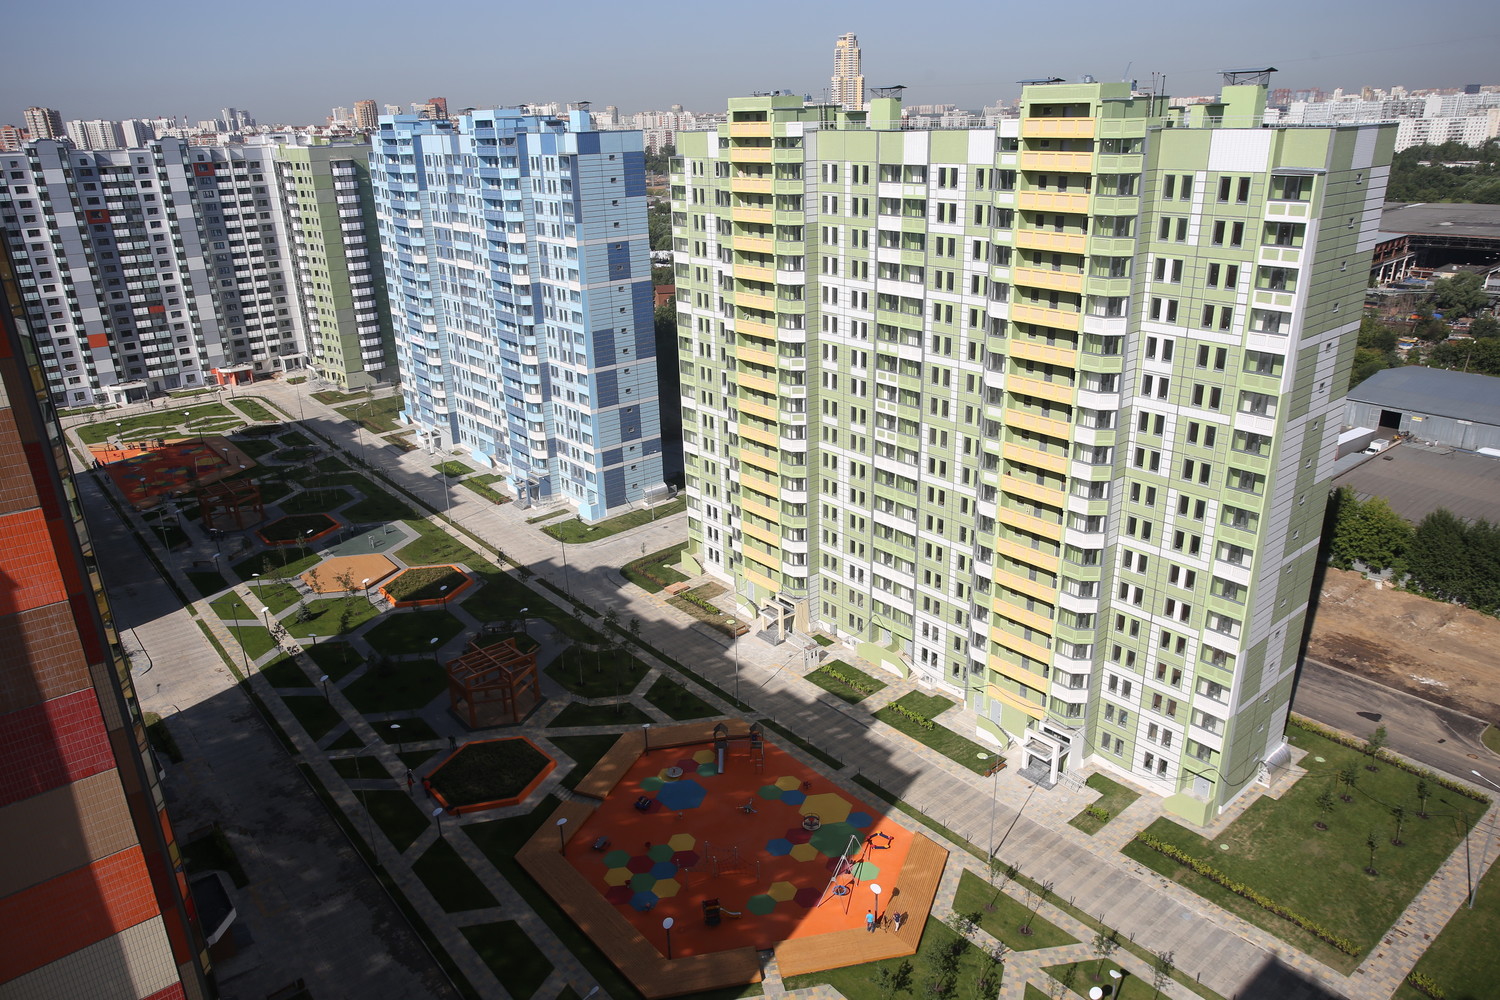 Более 130 тыс. кв. м жилой недвижимости построено в ТиНАО в январе-марте 2017 г.